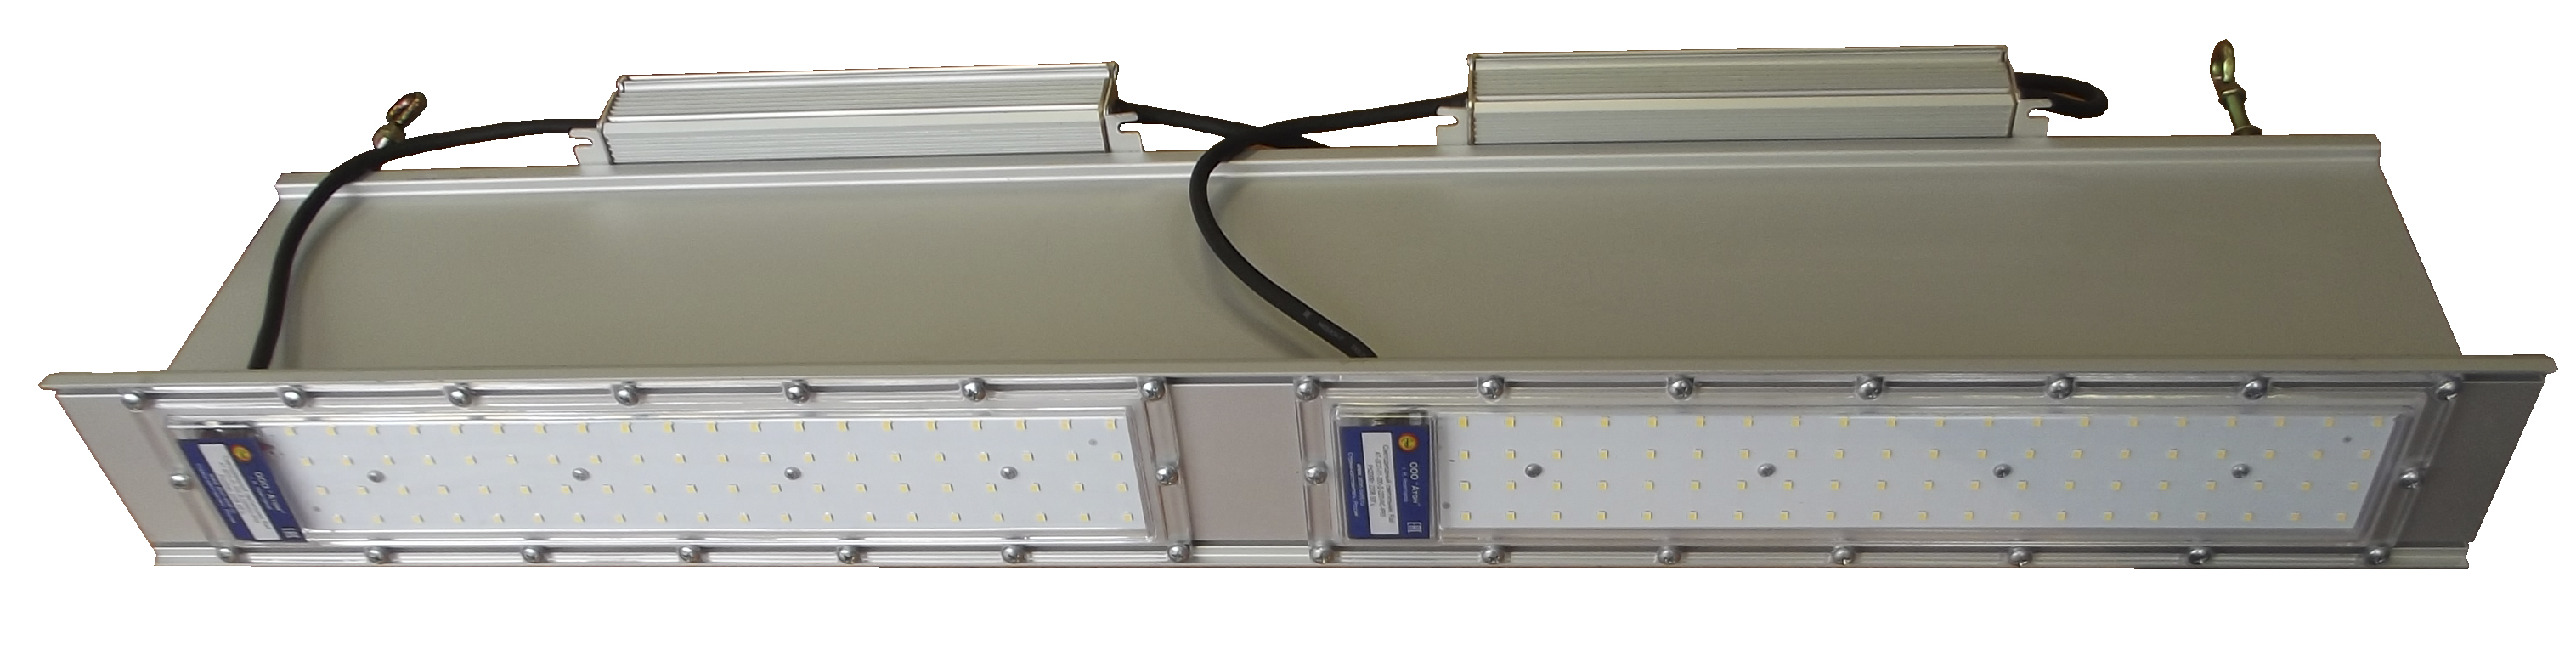 Мощные промышленные светильники АТ-ДСП-01 серии RAIL от компании Атон